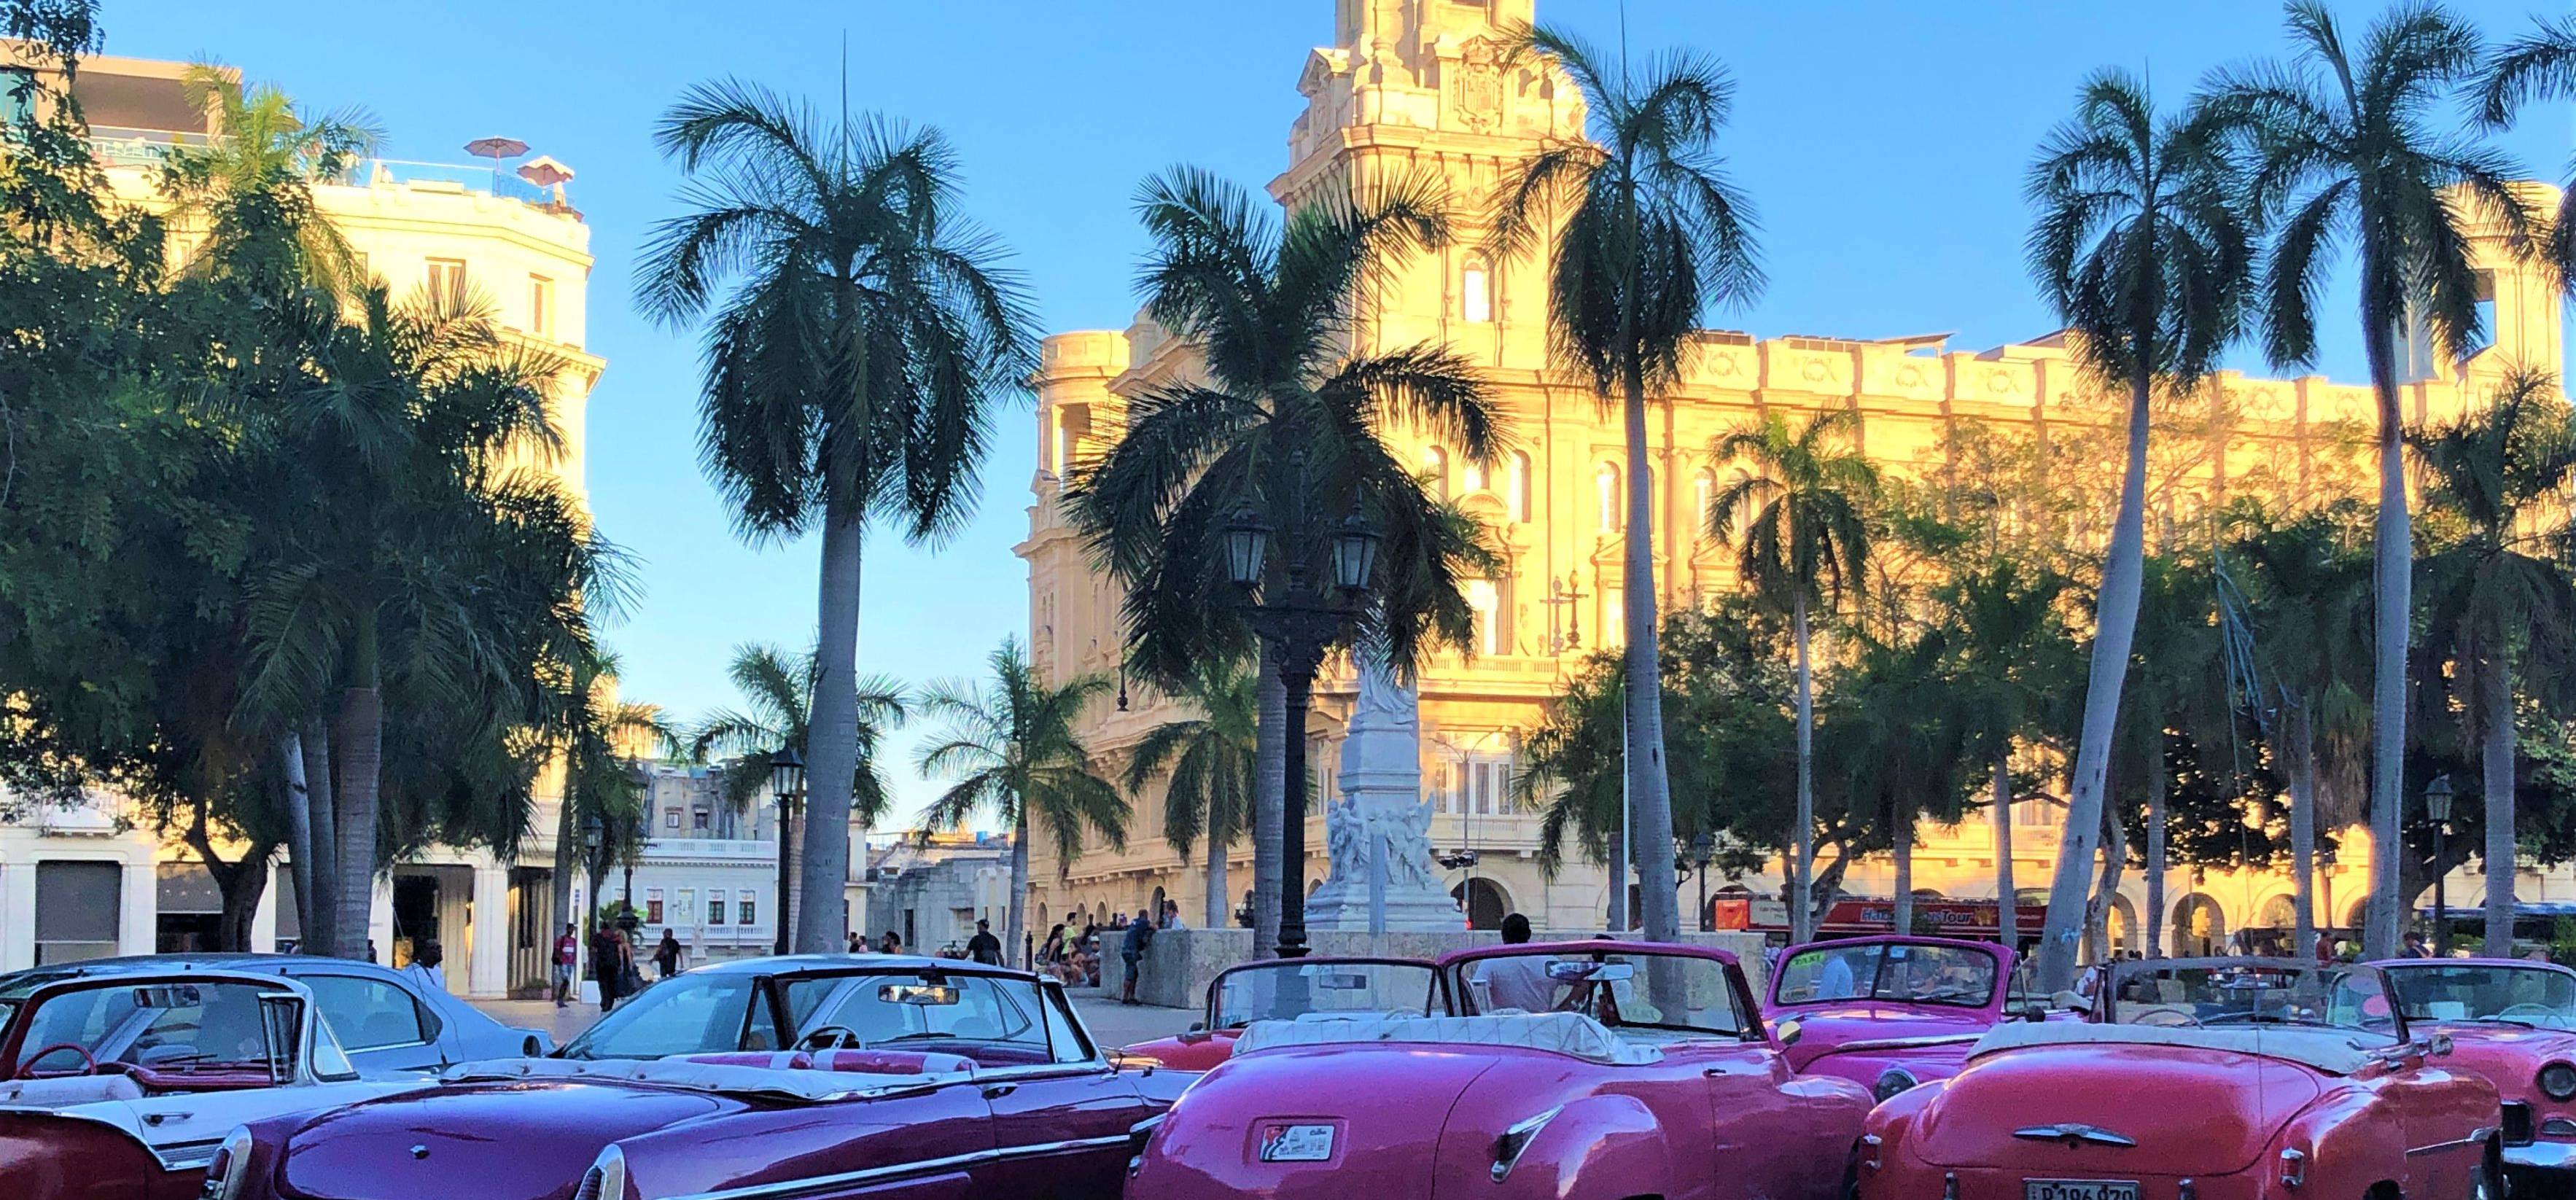 
Bienvenue à Cuba !